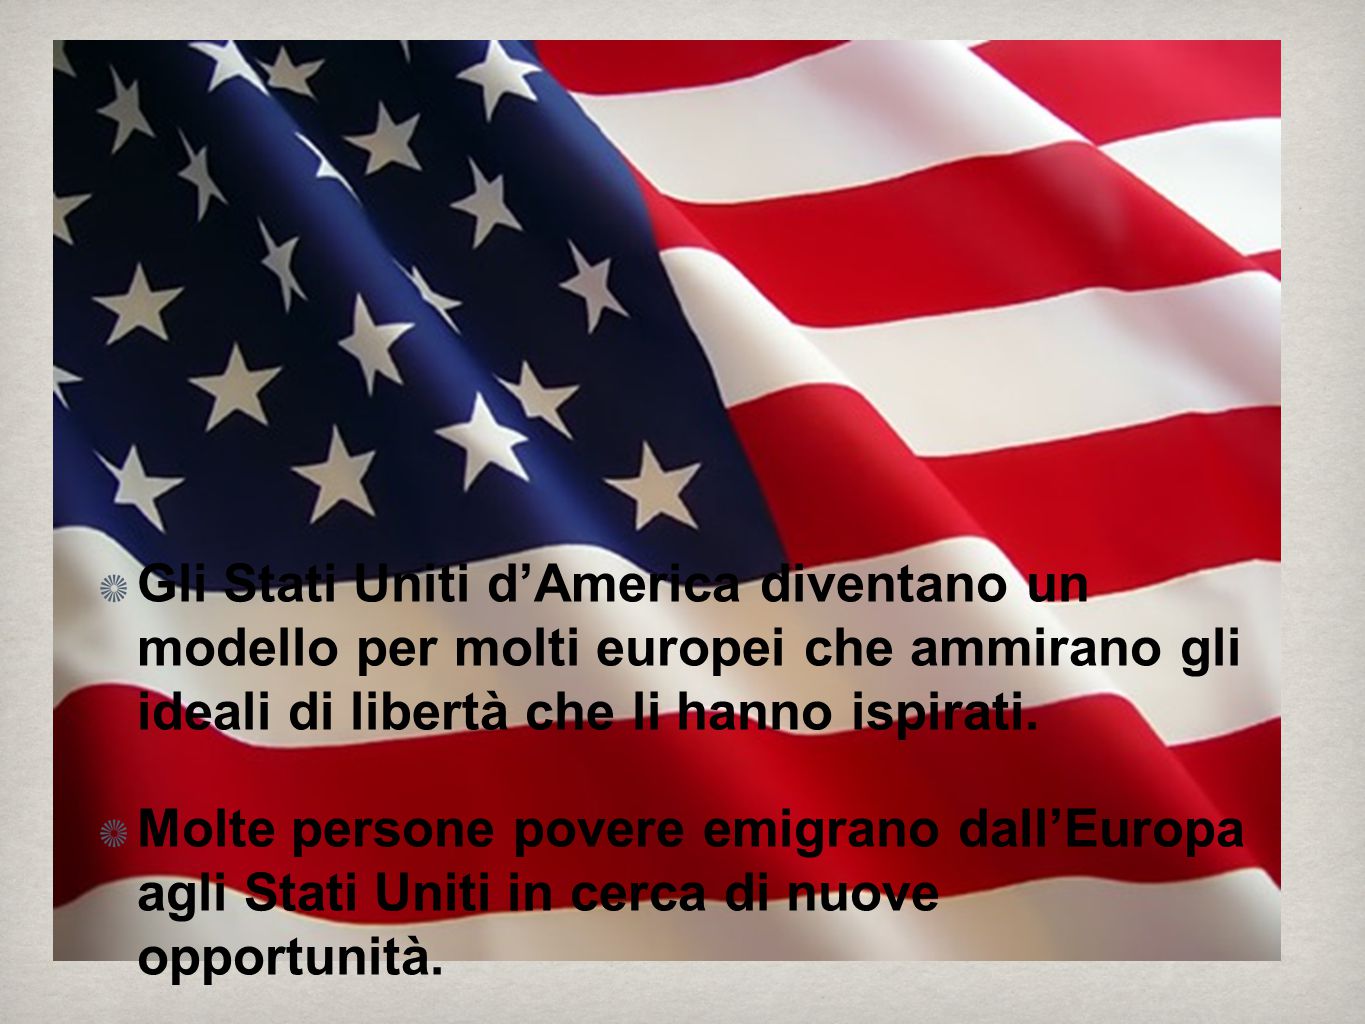 Gli Stati Uniti d’America diventano un modello per molti europei che ammirano gli ideali di libertà che li hanno ispirati.